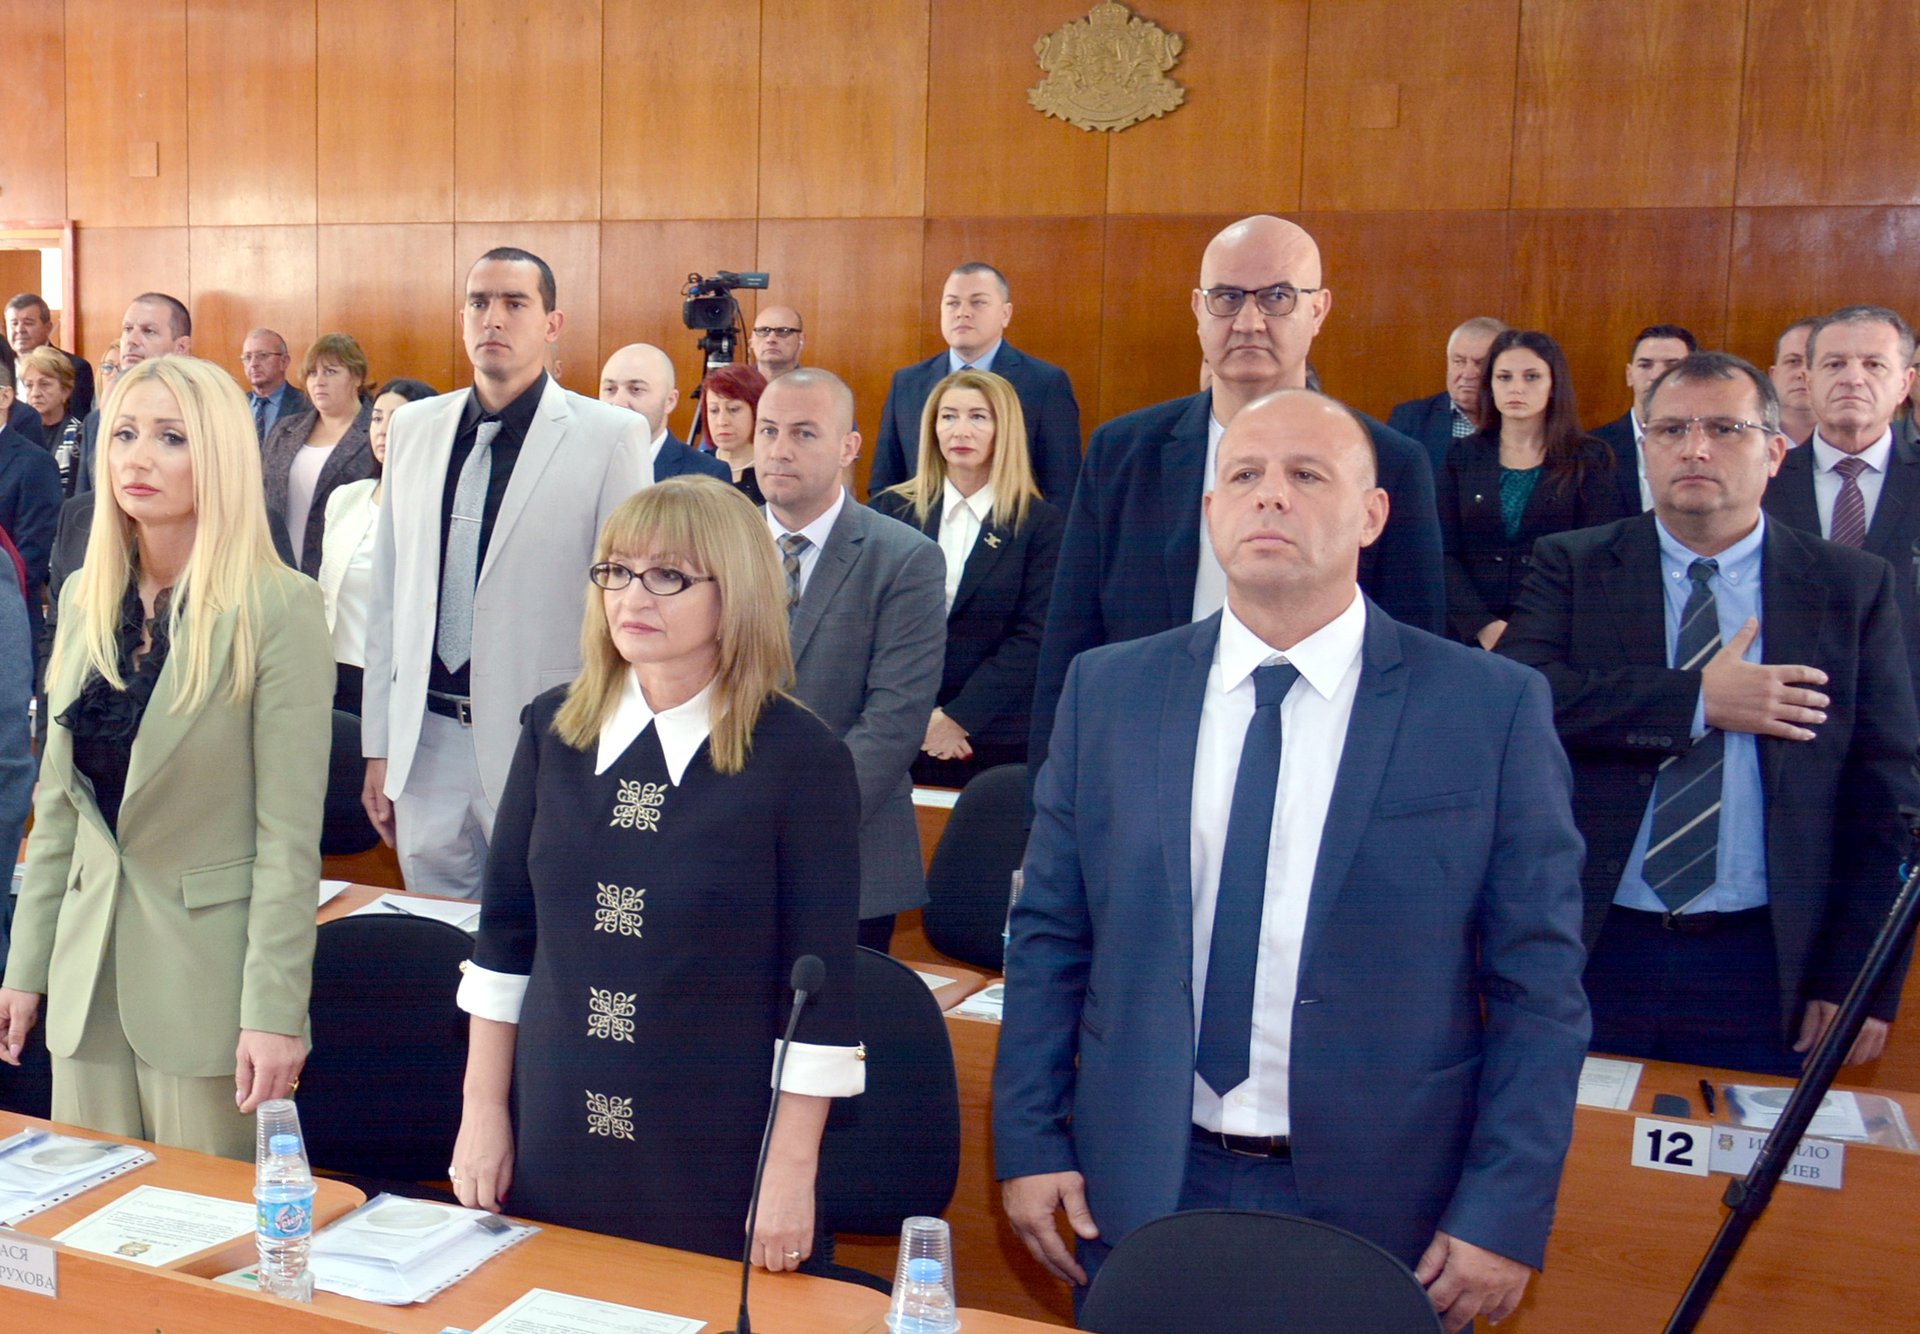 Досега всяко заседание на ОбС започваше с химните на България и ЕС, Снимка: Архив